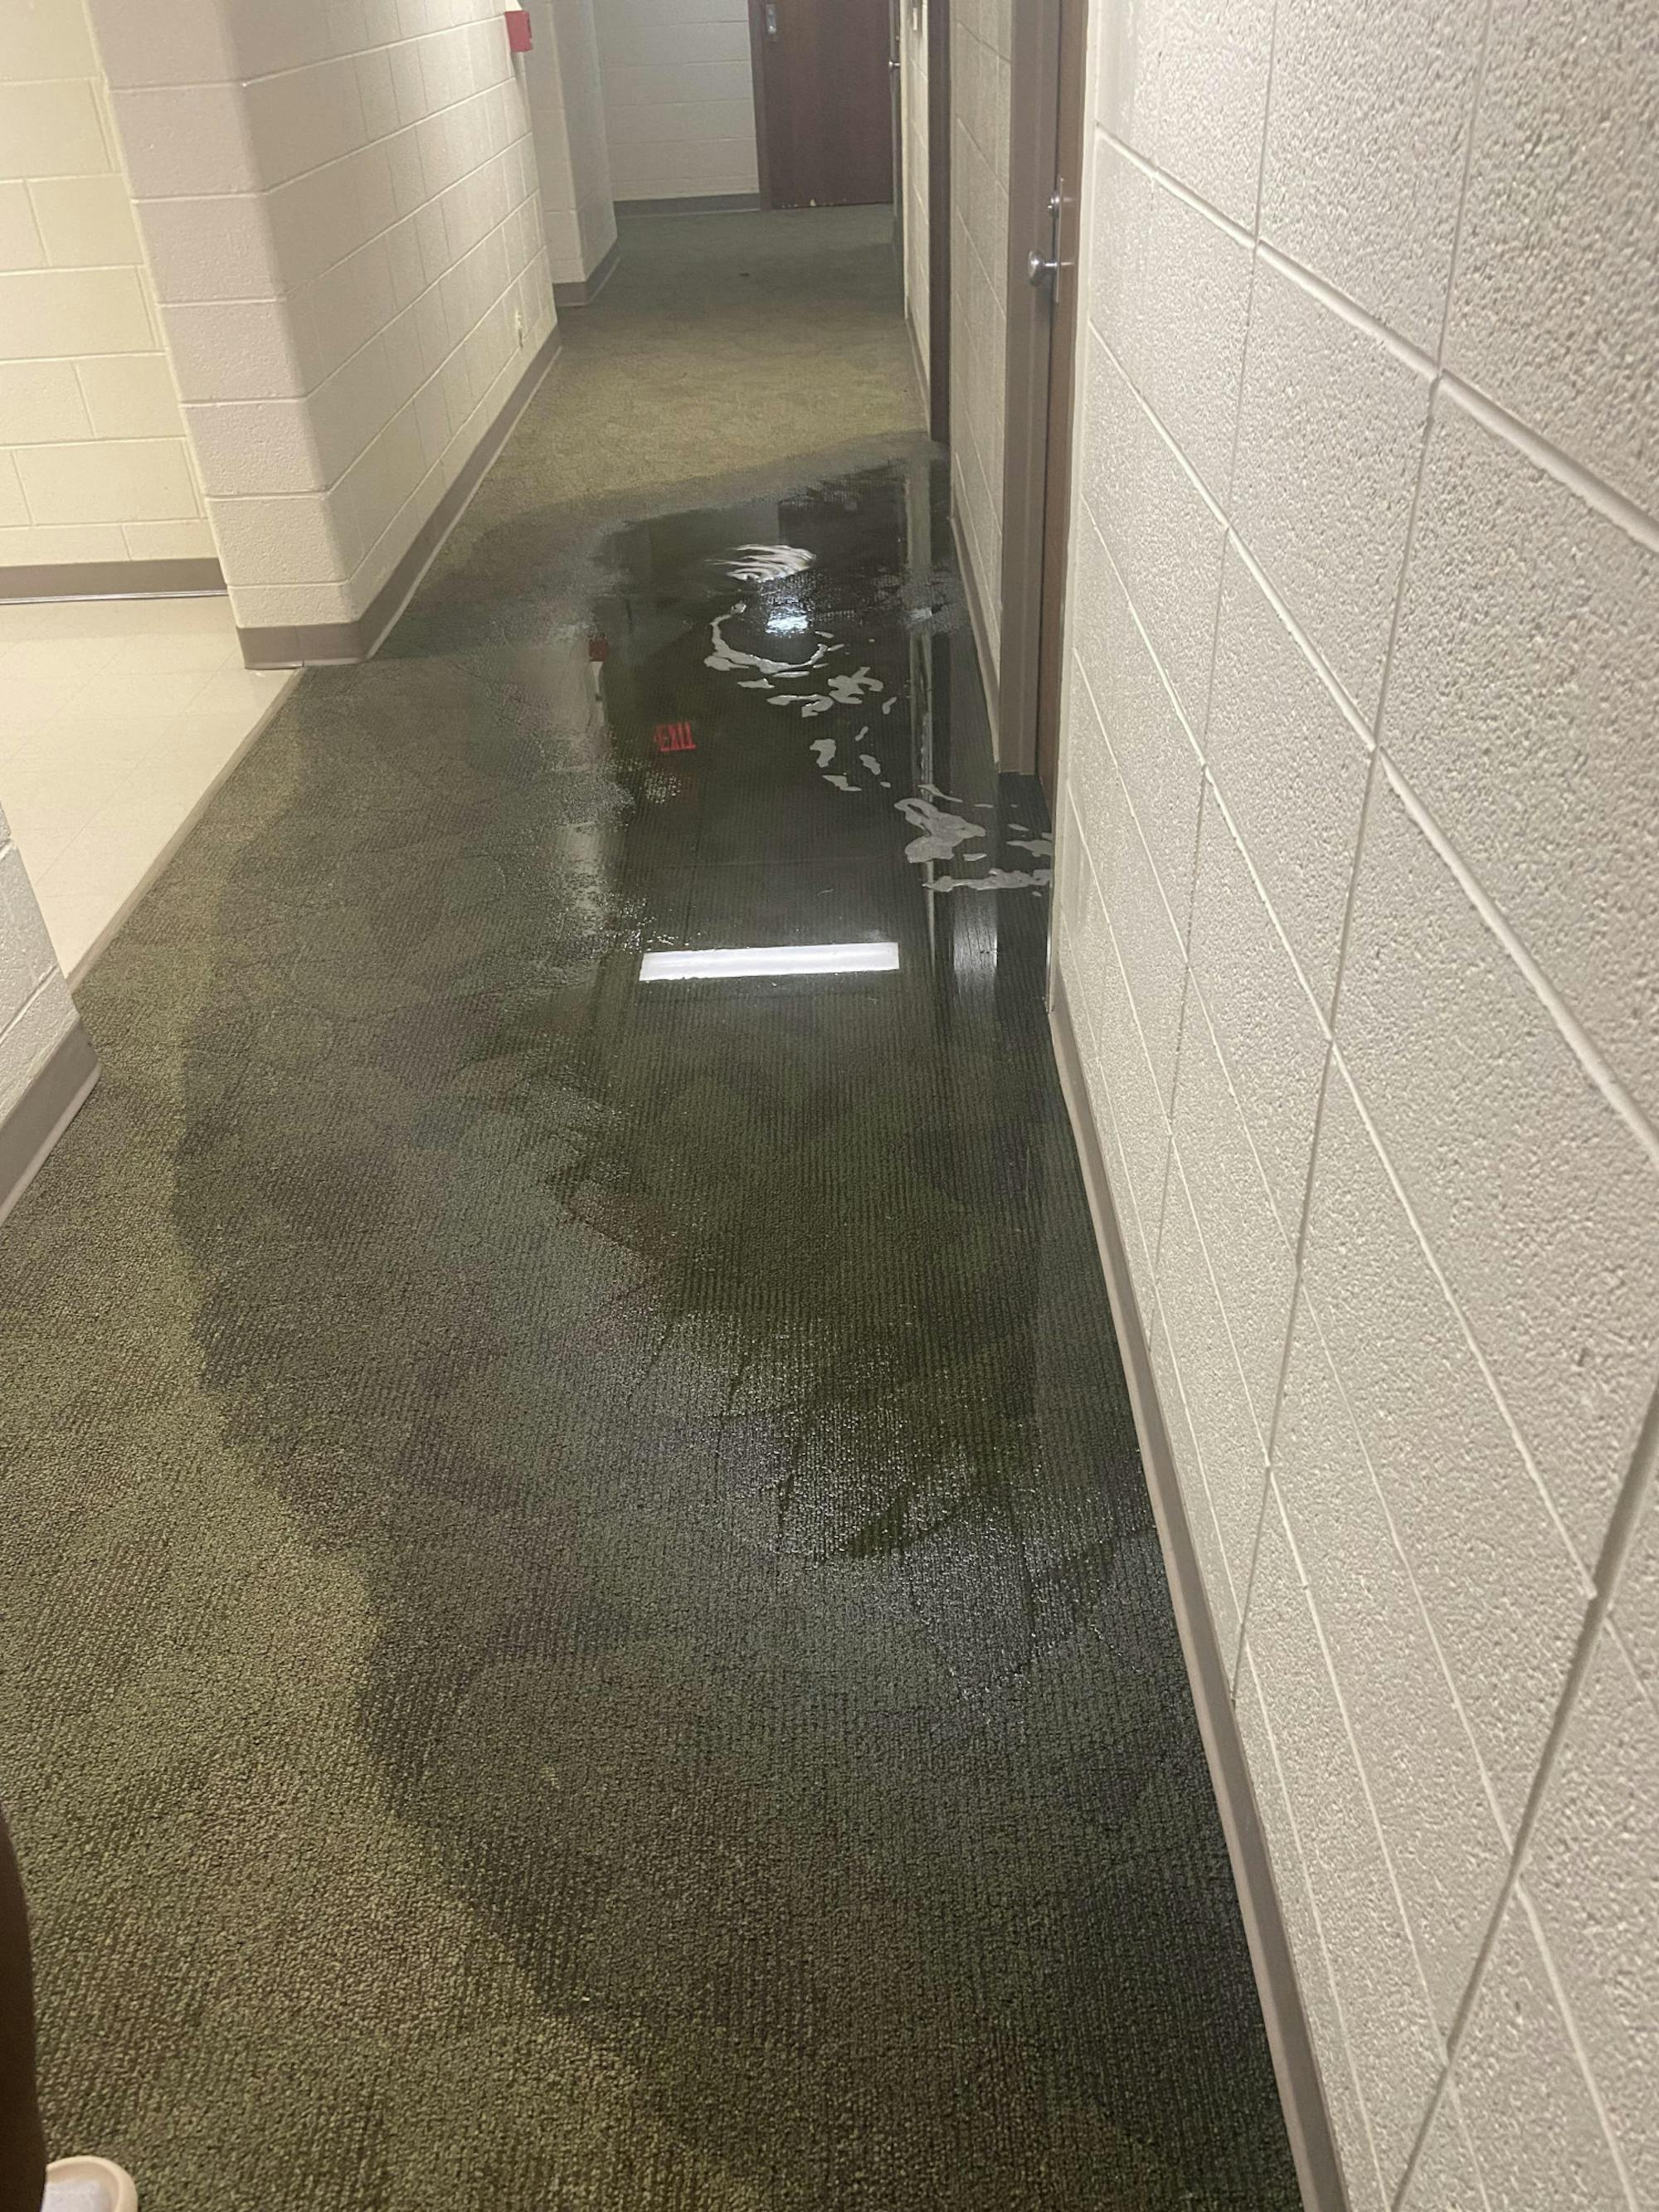 Flooded hallway.jpeg